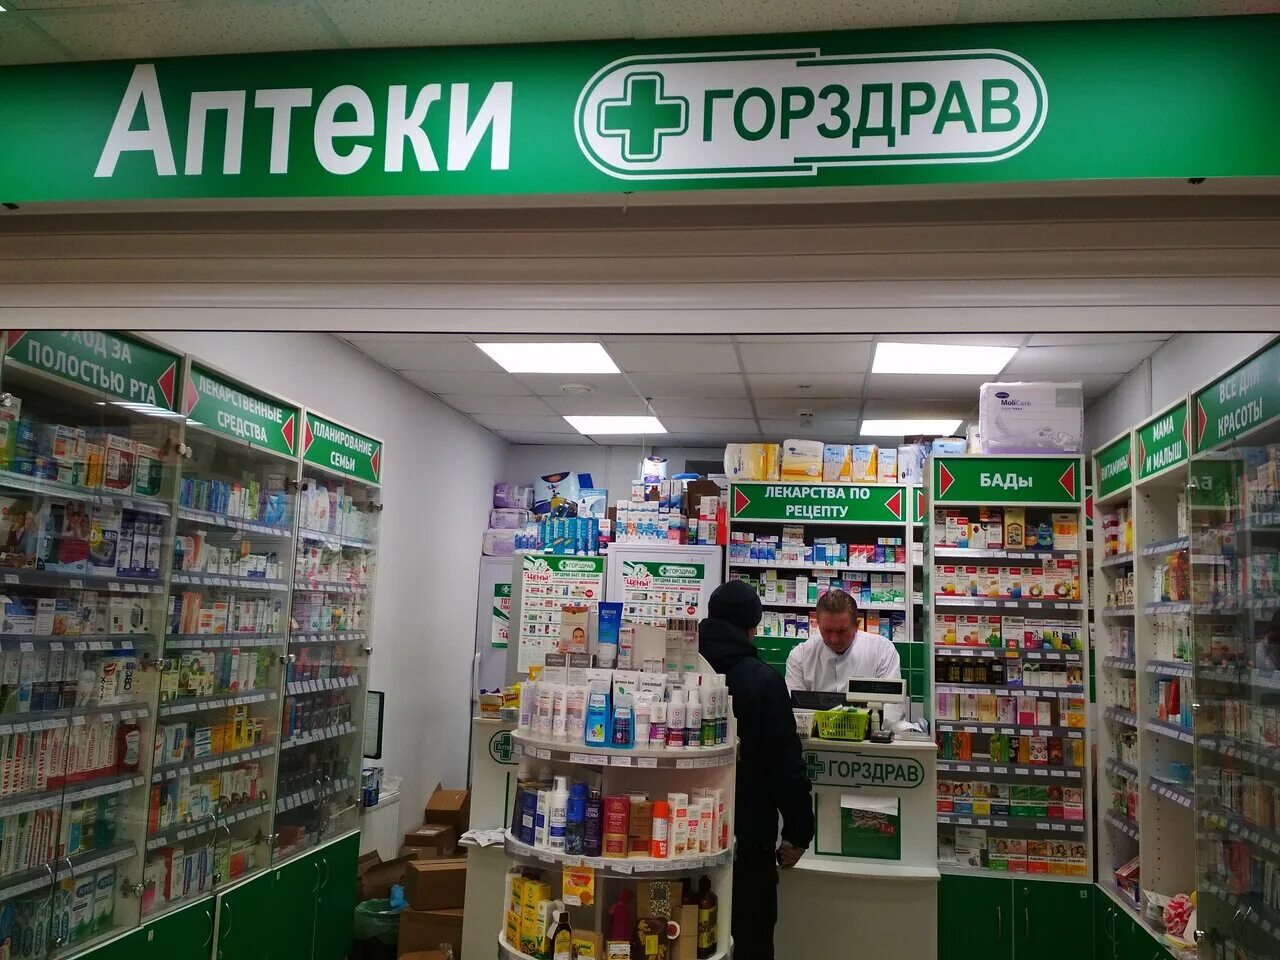 Тольятти ближайшие аптеки. ГОРЗДРАВ. Аптека. Аптека ГОРЗДРАВ фото. Аптека ГОРЗДРАВ логотип.